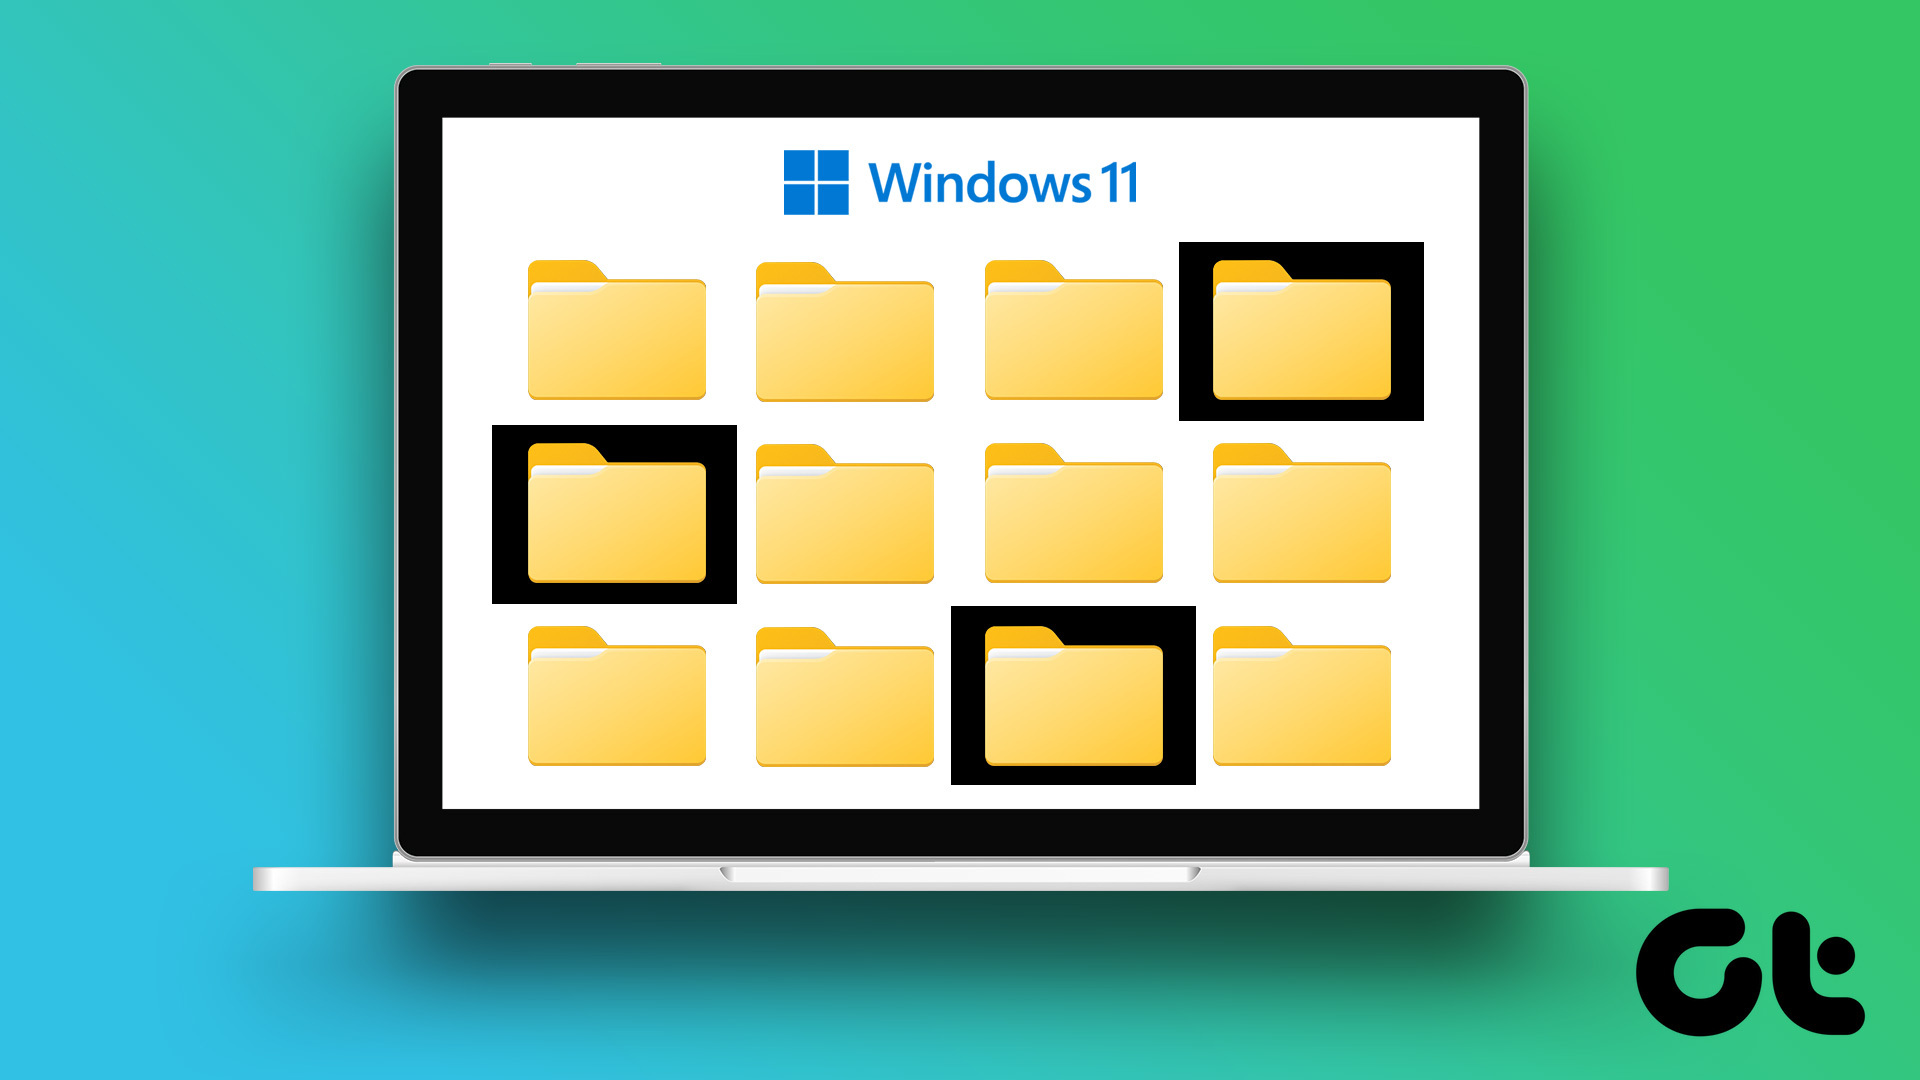 Muốn tìm hình nền đẹp cho Windows 11? Chúng tôi có một bộ sưu tập độc đáo các hình nền folder cực kì bắt mắt để bạn lựa chọn. Hãy truy cập ảnh liên quan và cài đặt ngay hôm nay!